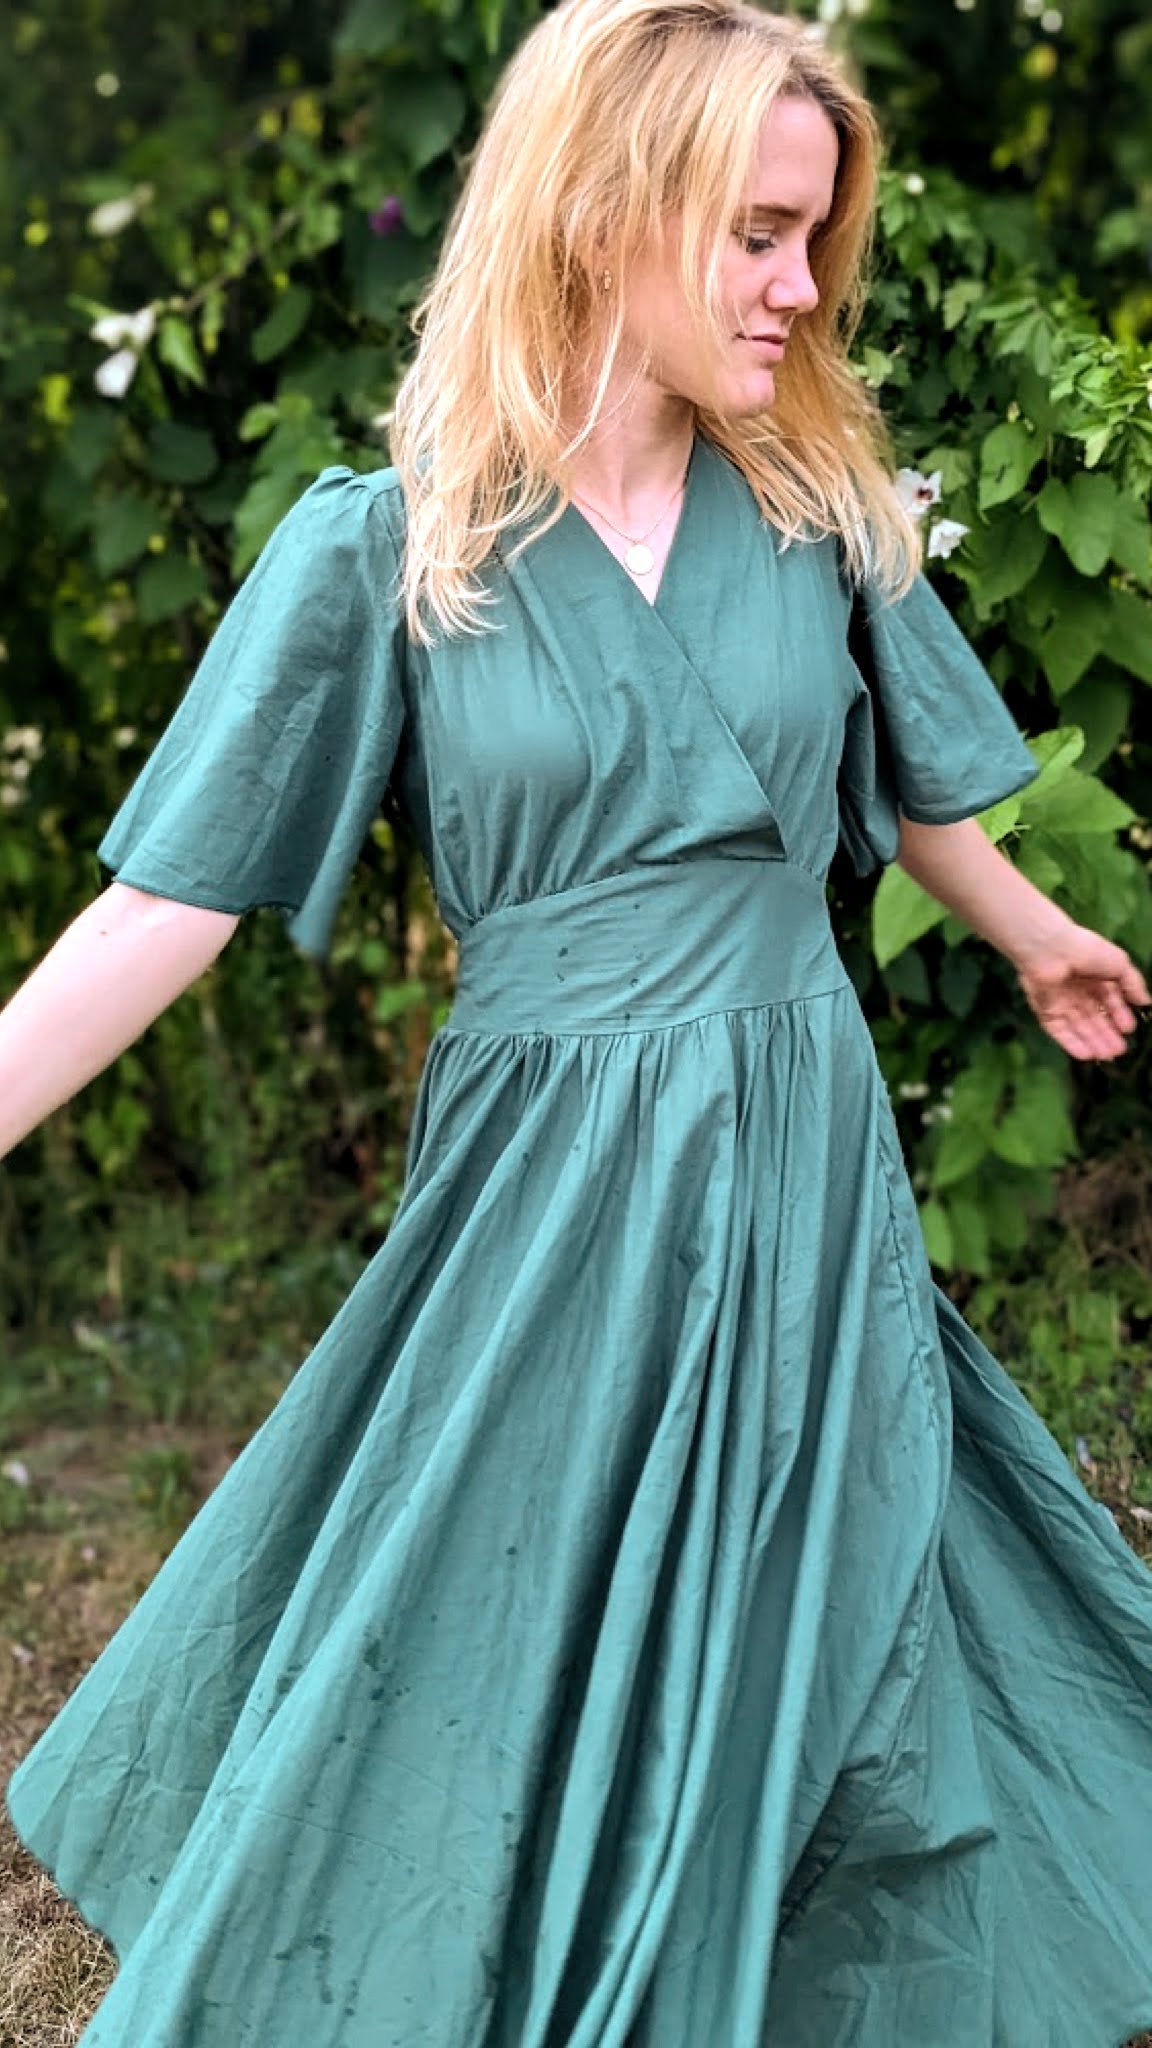 Nő sötétzöld, smaragd színű pörgős ruhában forog